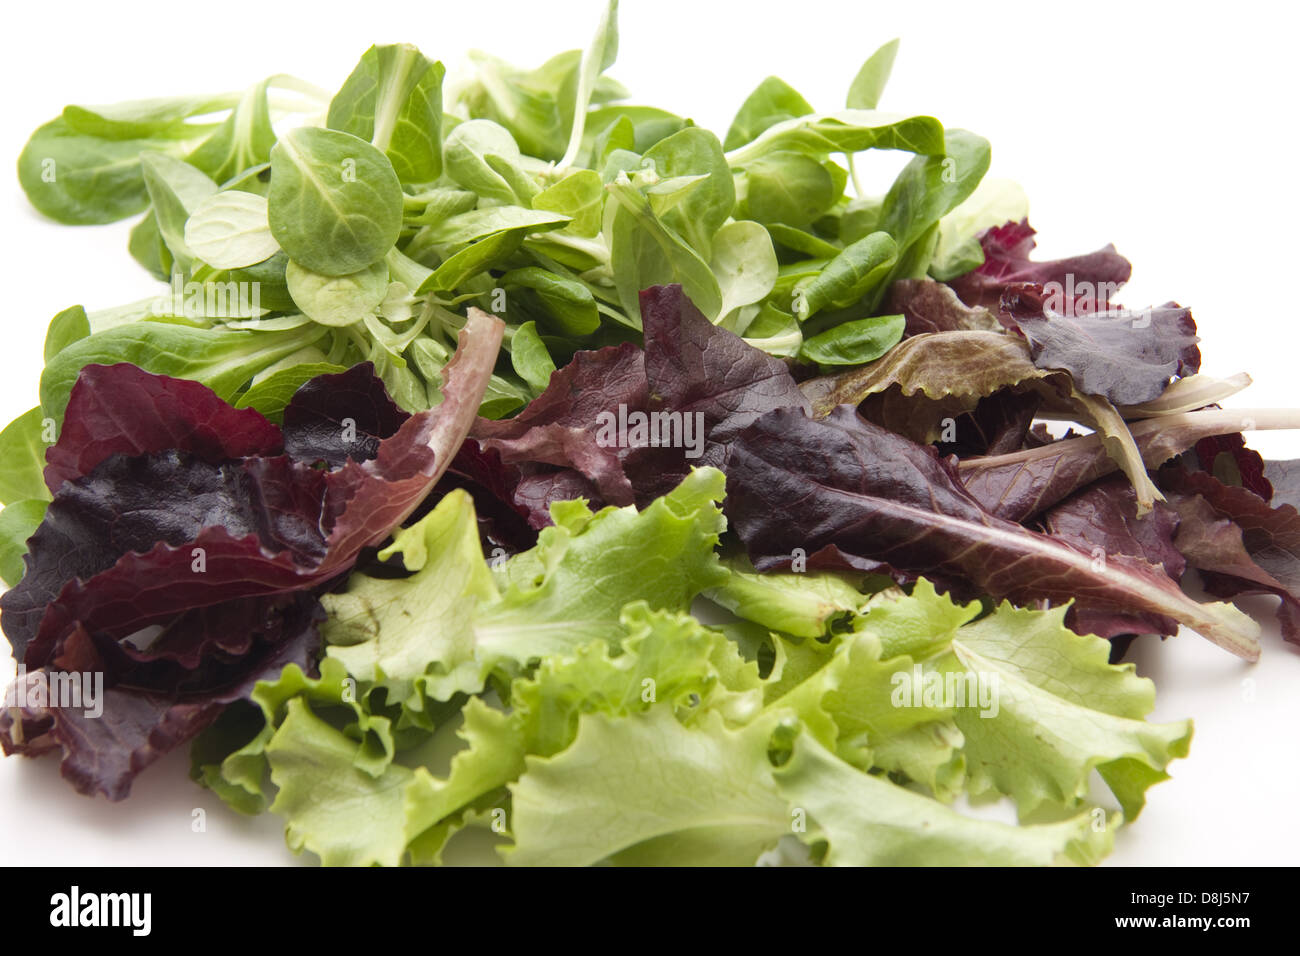 Leaf vegetable Stock Photo